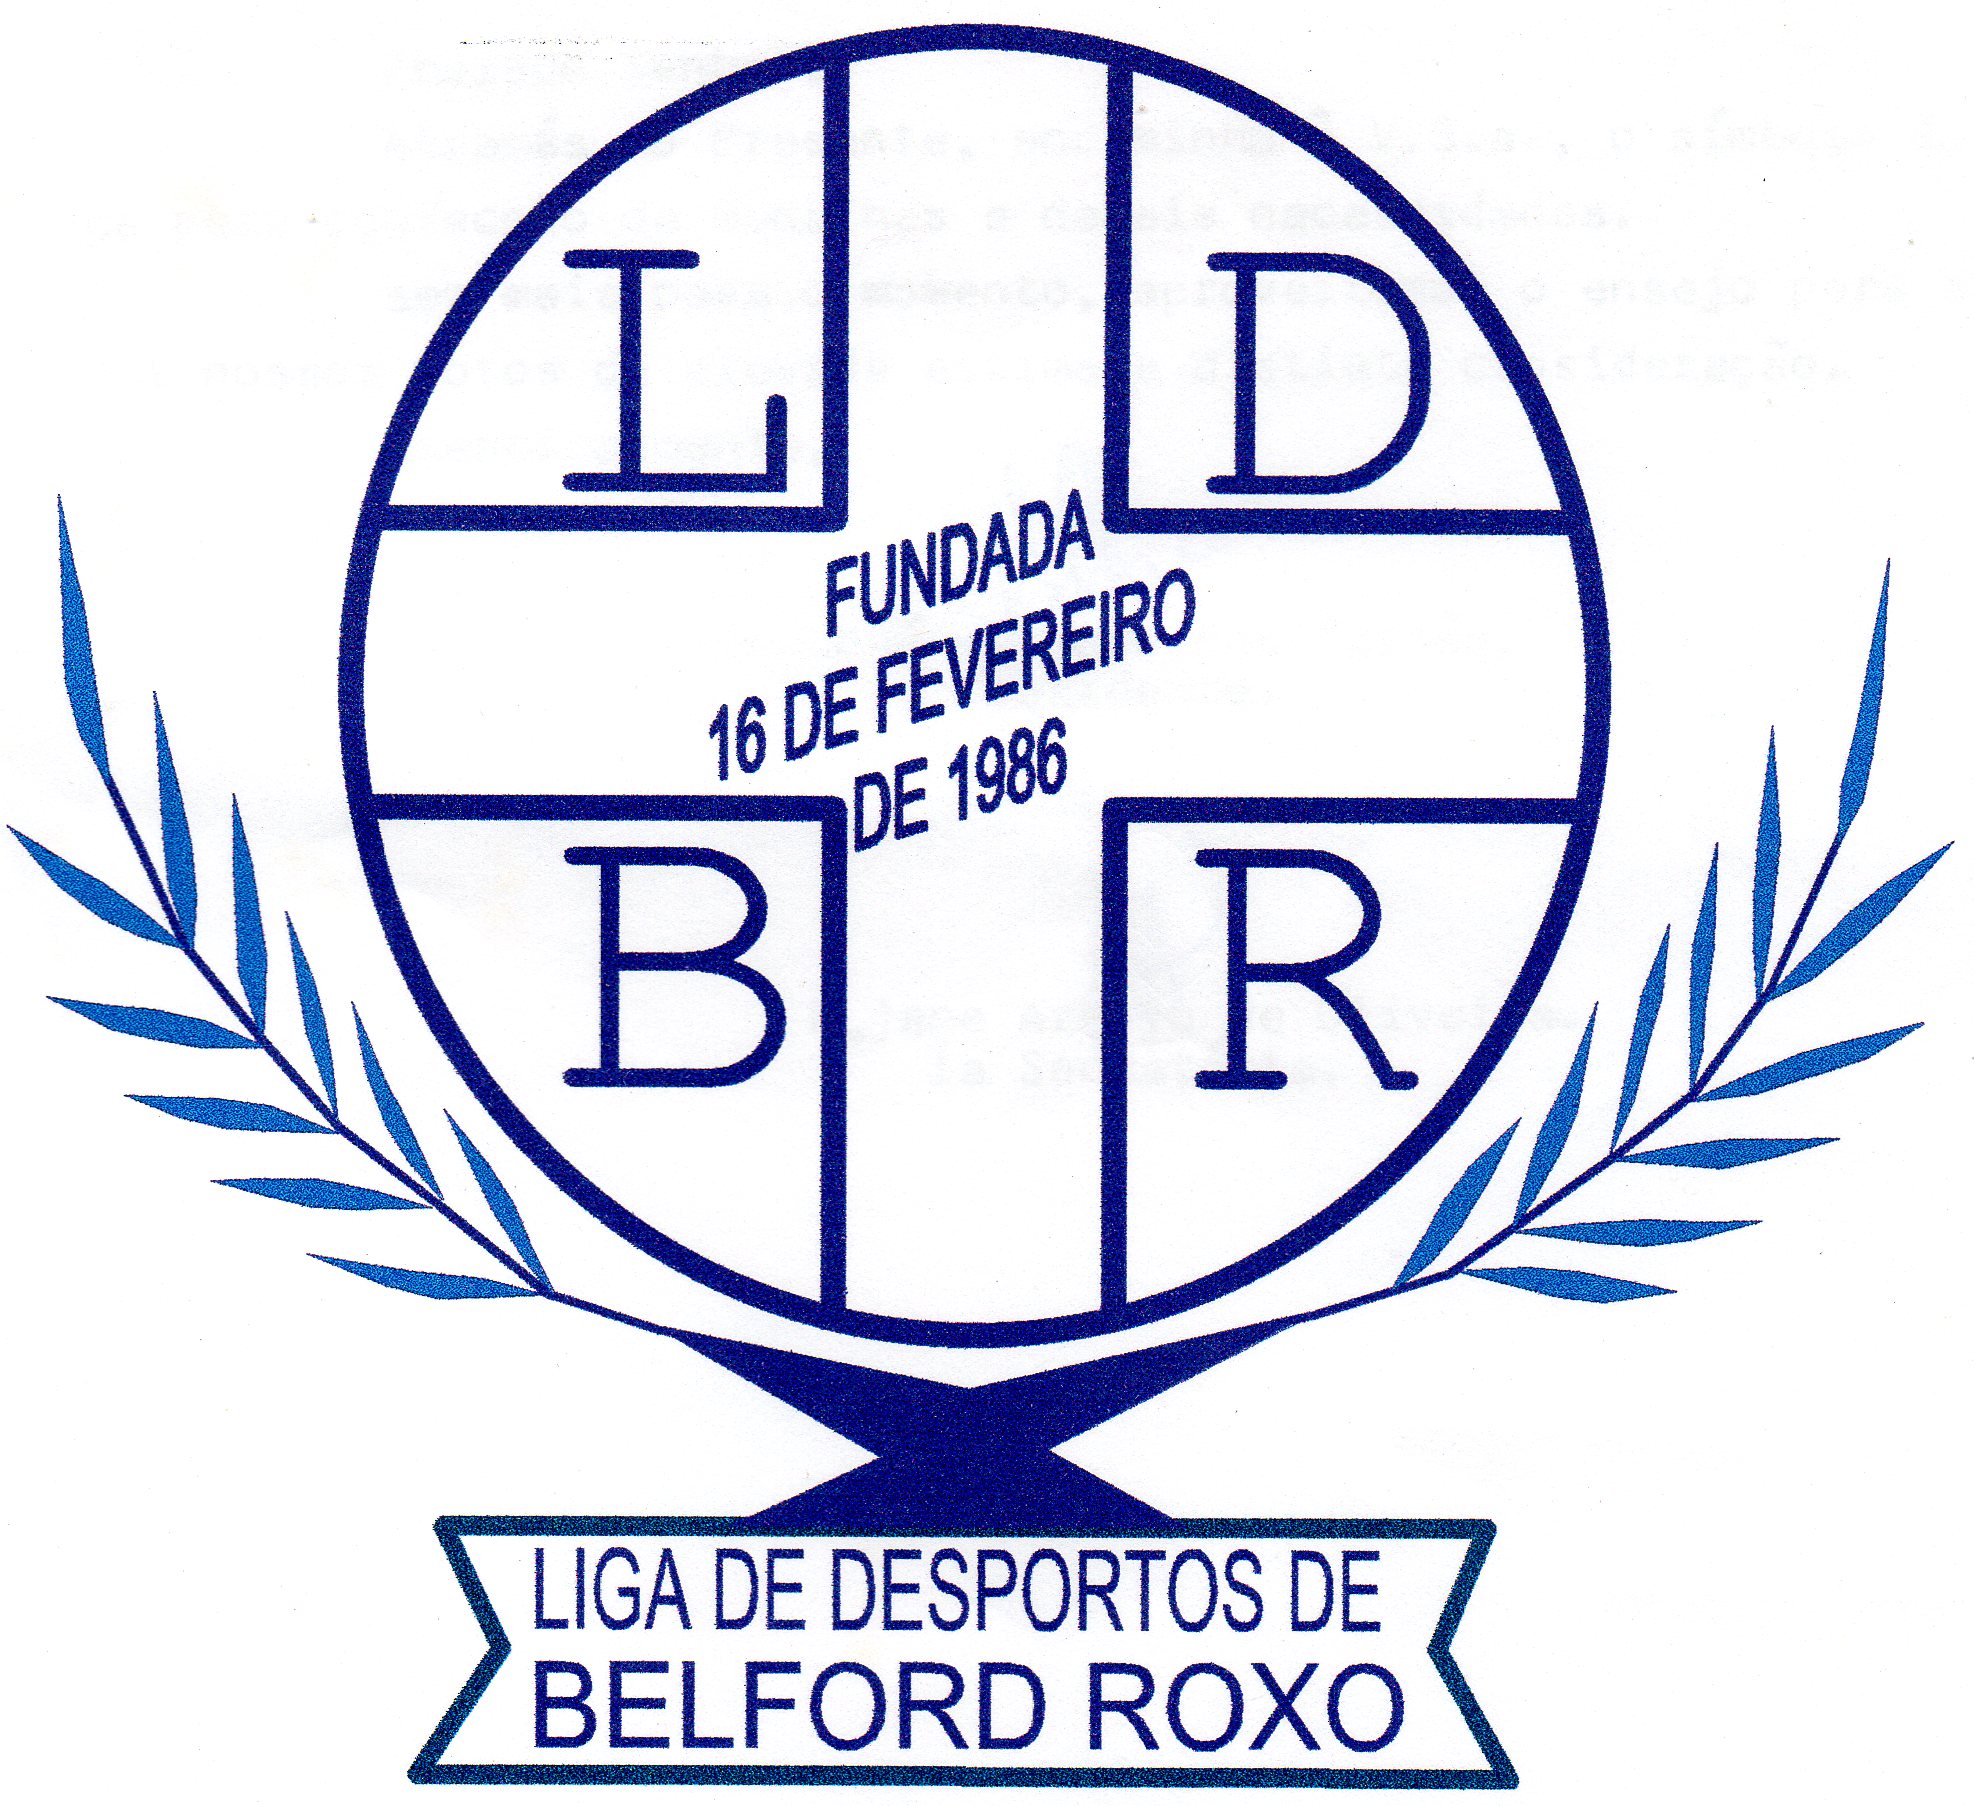 LIGA DE DESPORTOS DE BELFORD ROXO